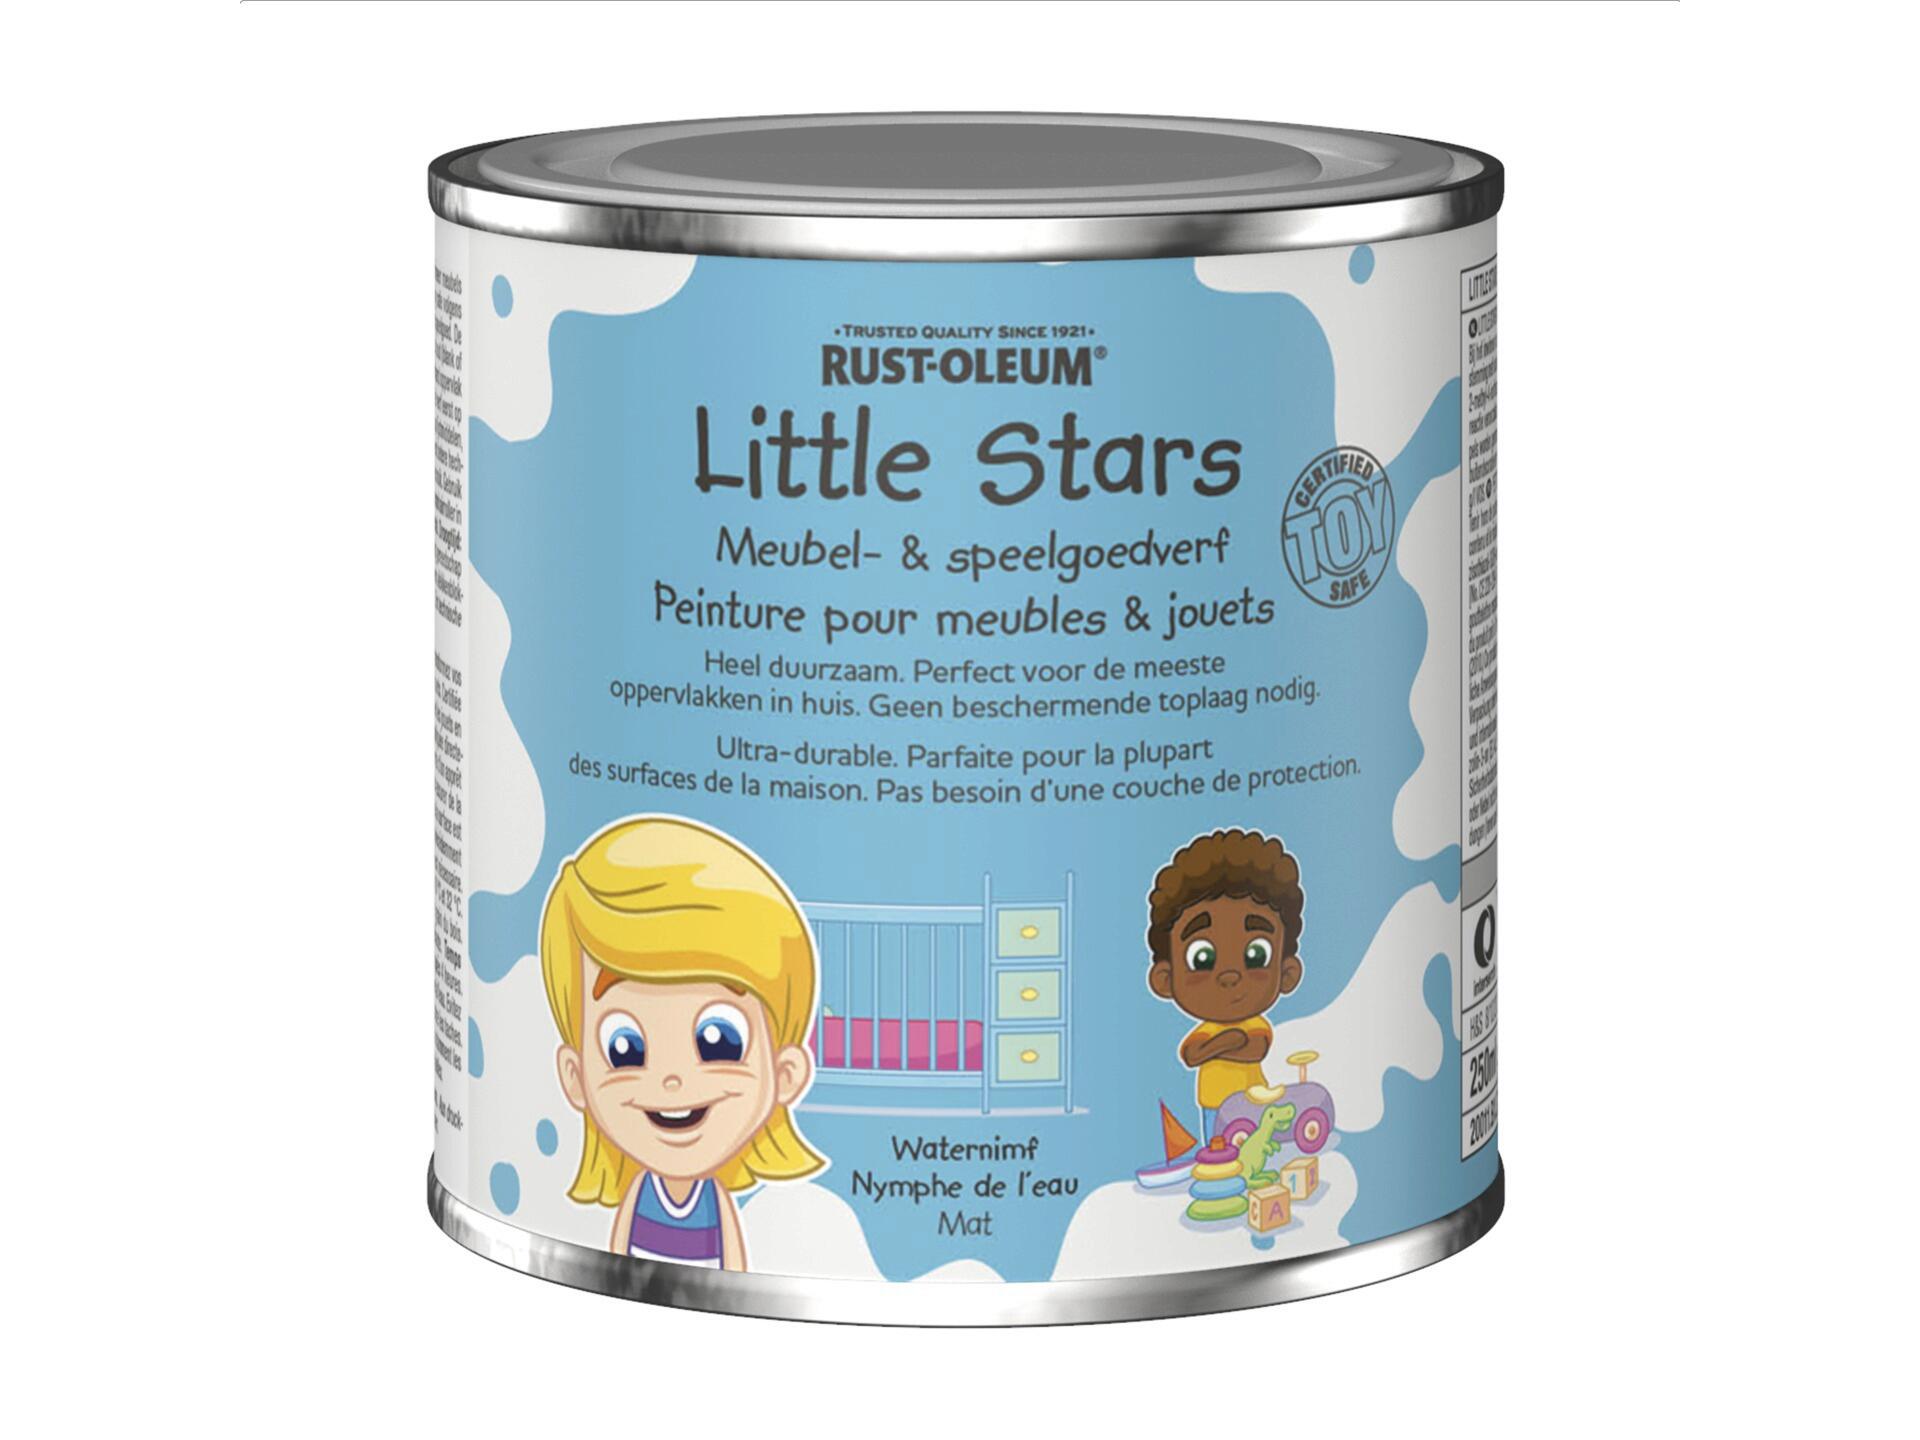 Rust-oleum Little Stars peinture pour meubles et jouets 250ml nymphe de l'eau